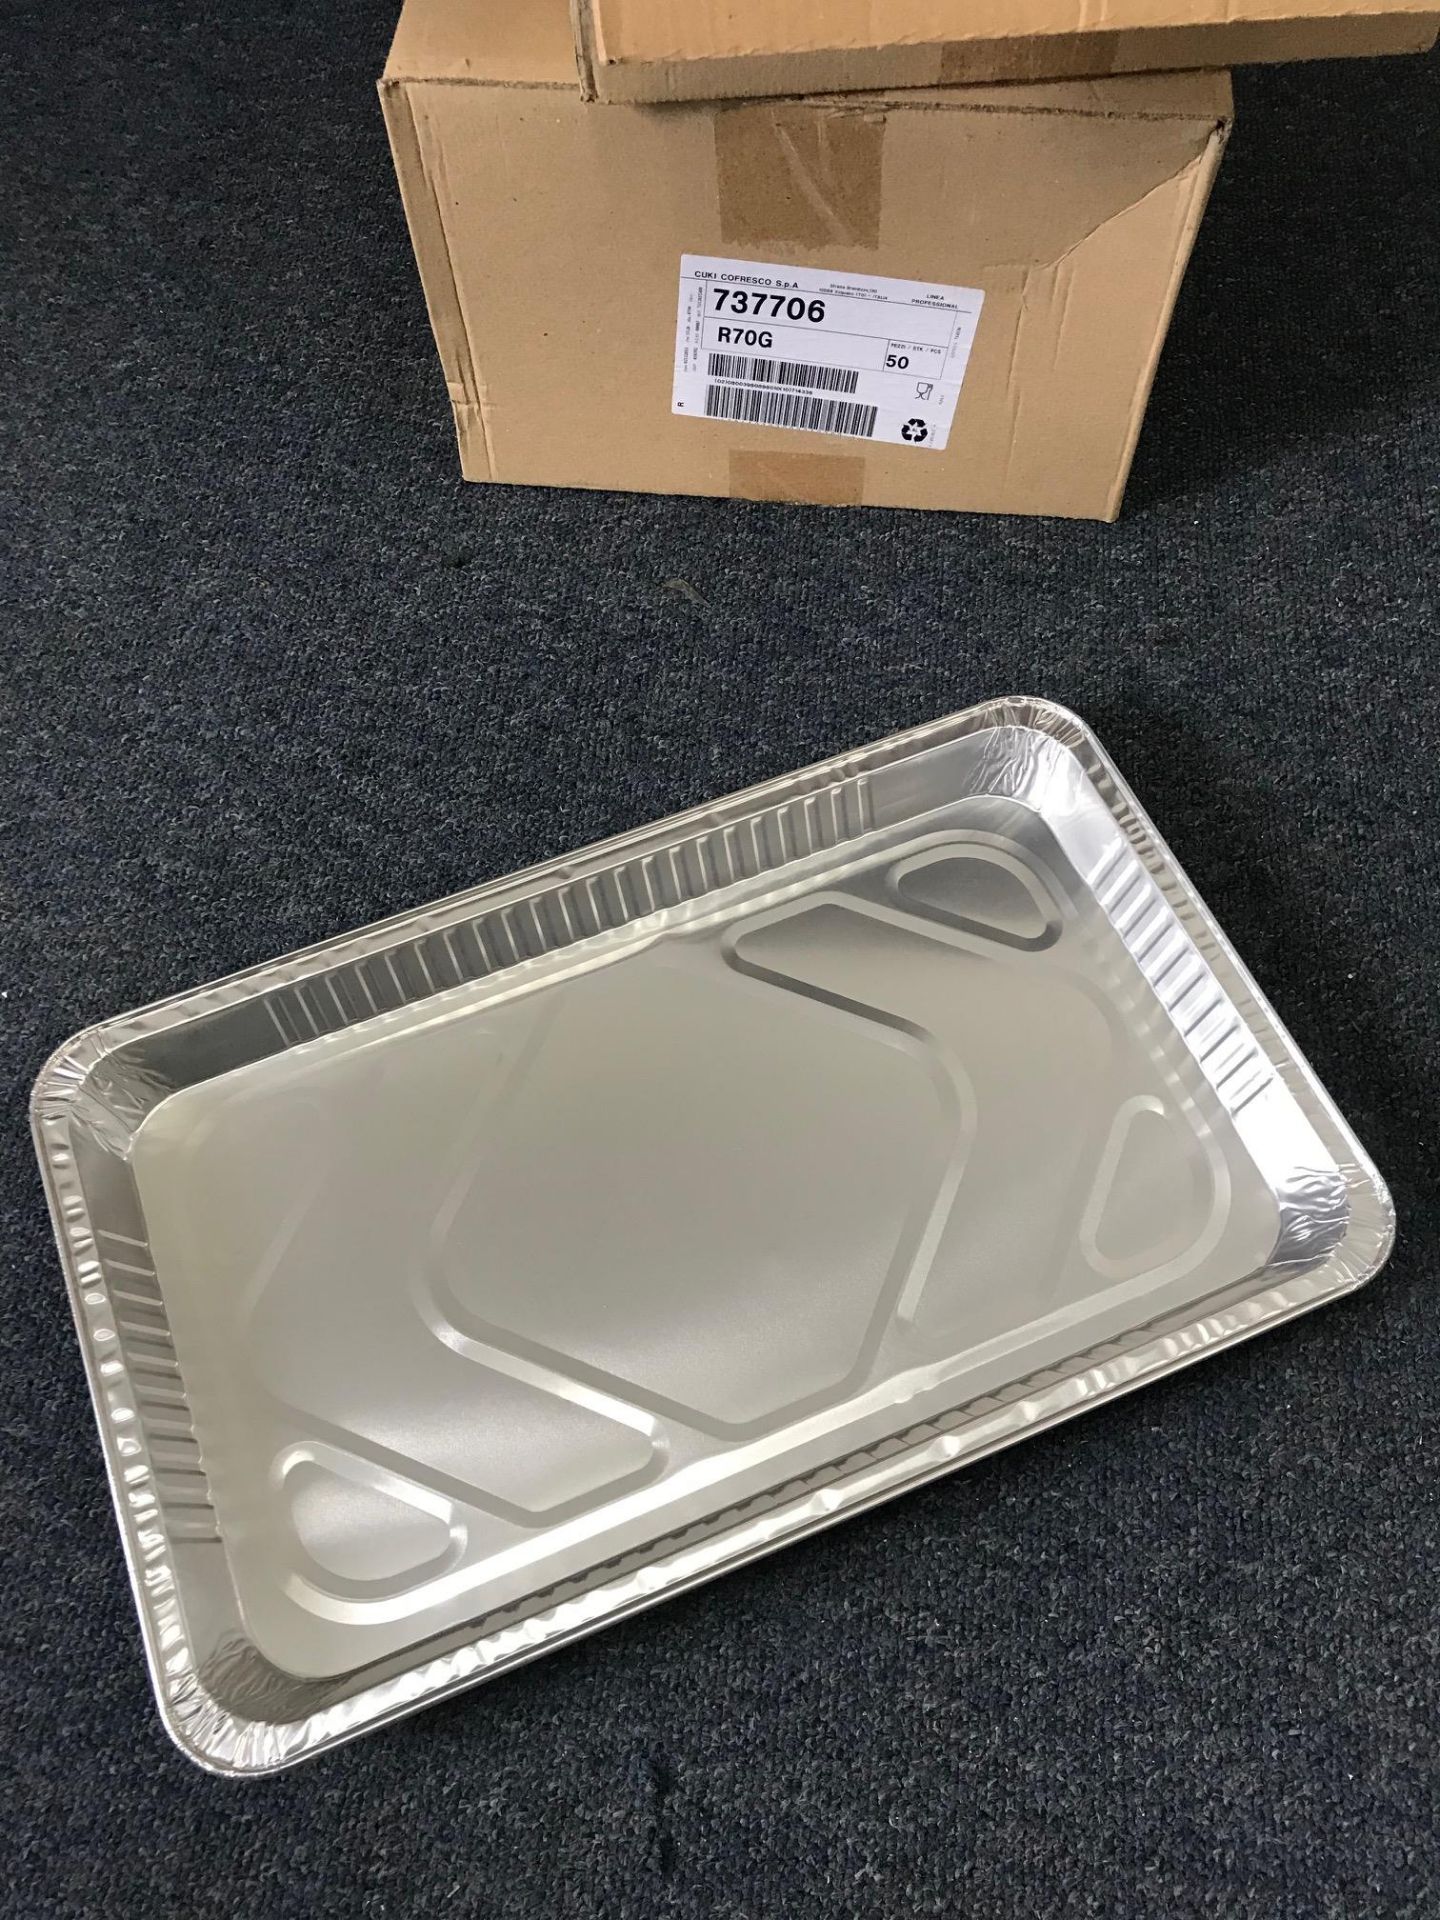 2 Boxes Of 50 Aluminium Baking Trays - Image 2 of 2